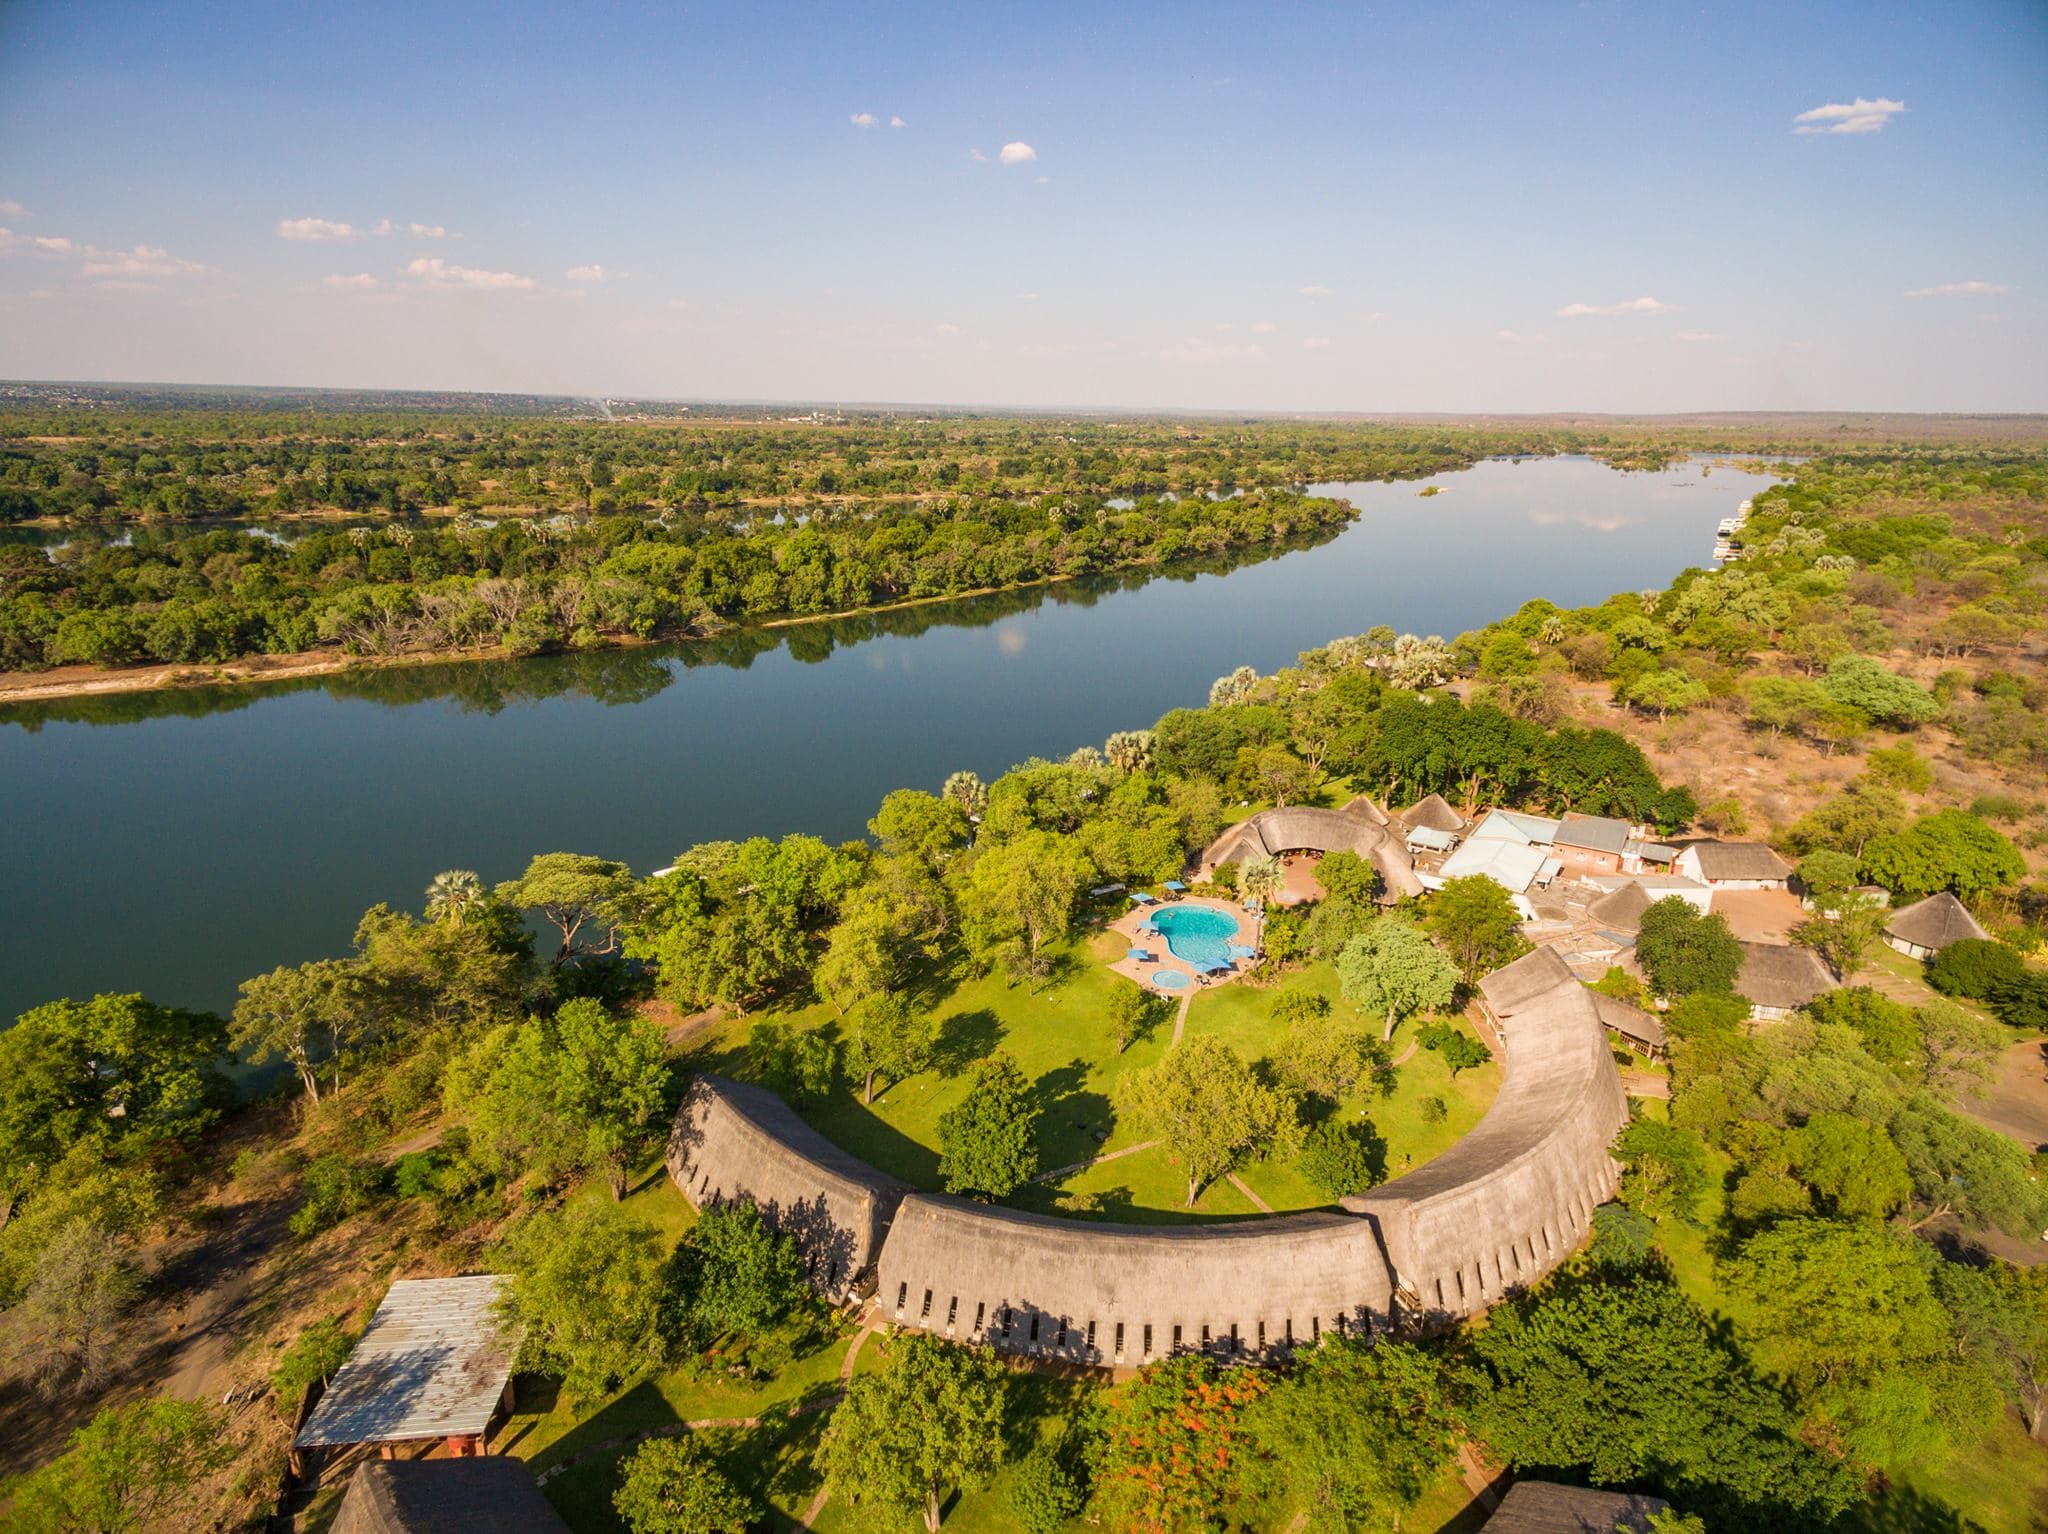 A’zambezi River Lodge